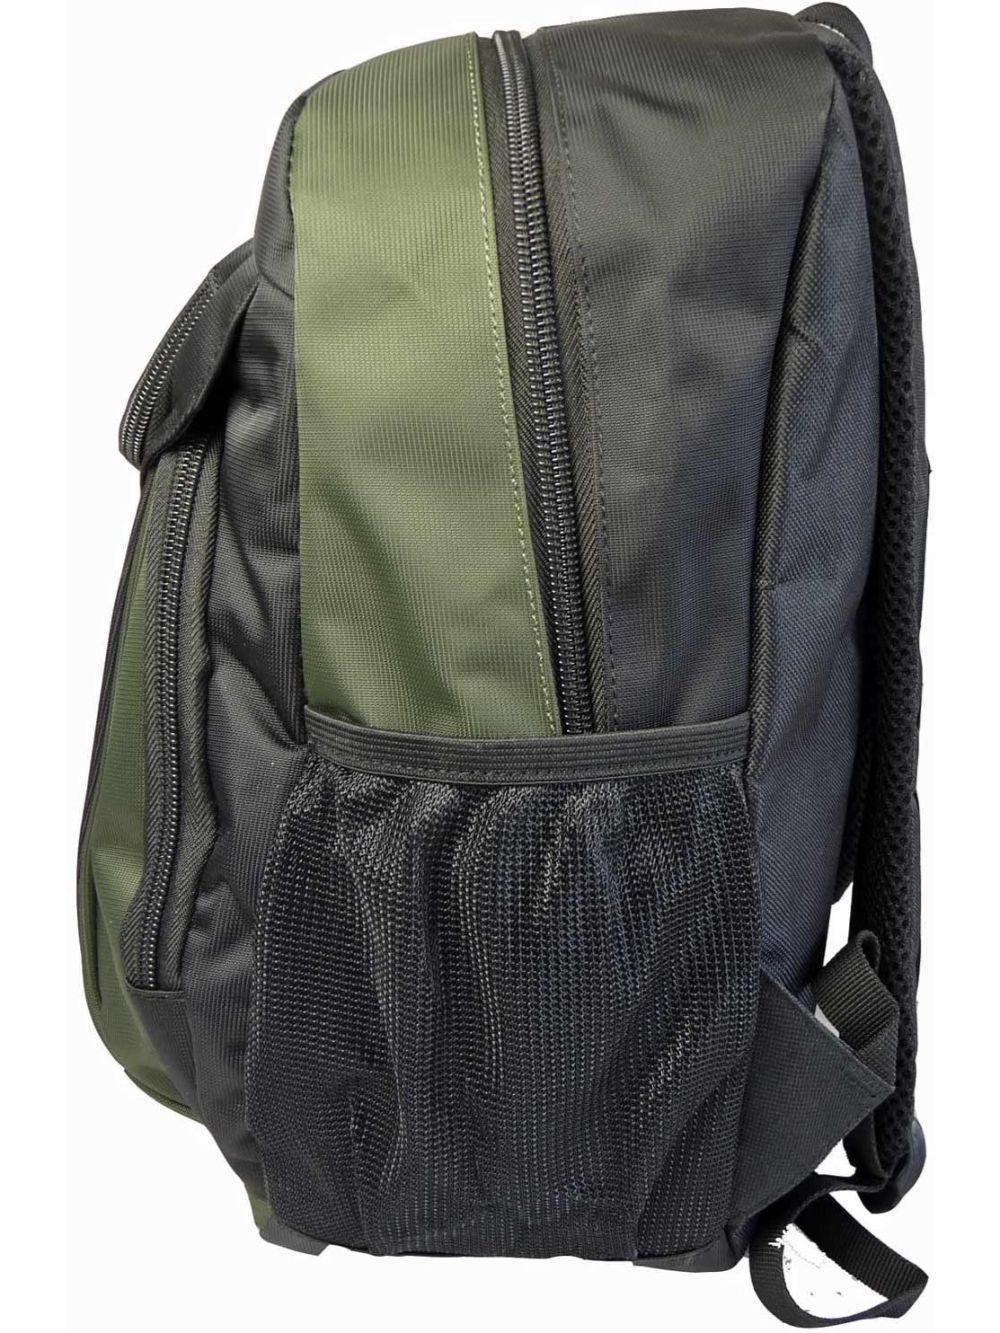 Roamlite Small Childrens Backpack Green Polyester RL33  side